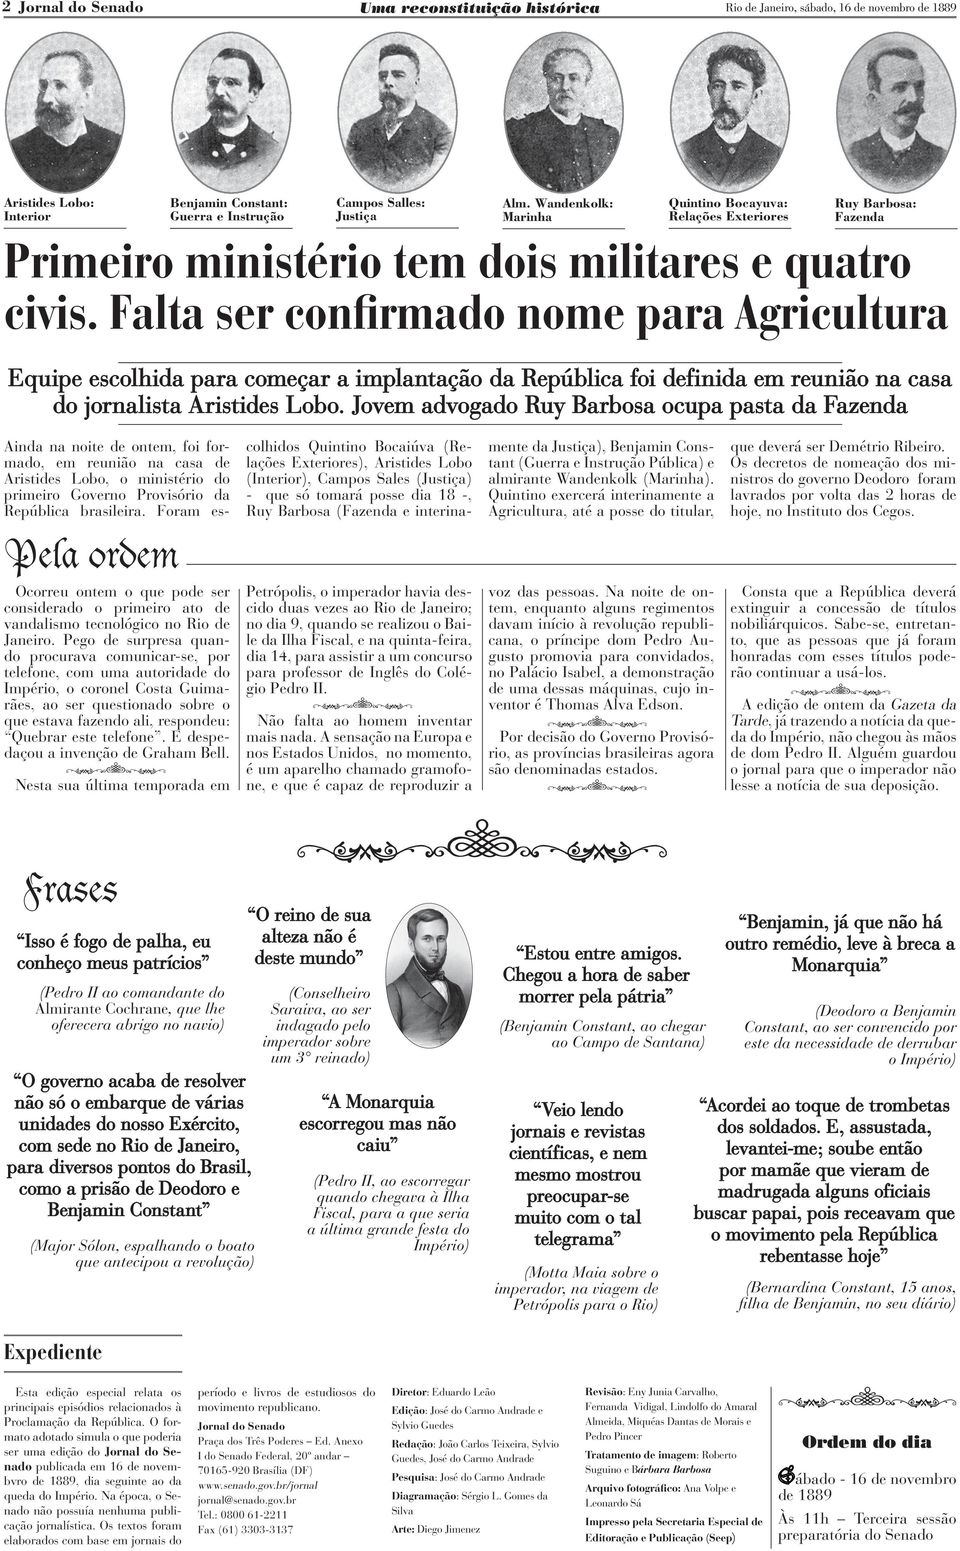 Falta ser confirmado nome para Agricultura Equipe escolhida para começar a implantação da República foi definida em reunião na casa do jornalista Aristides Lobo.